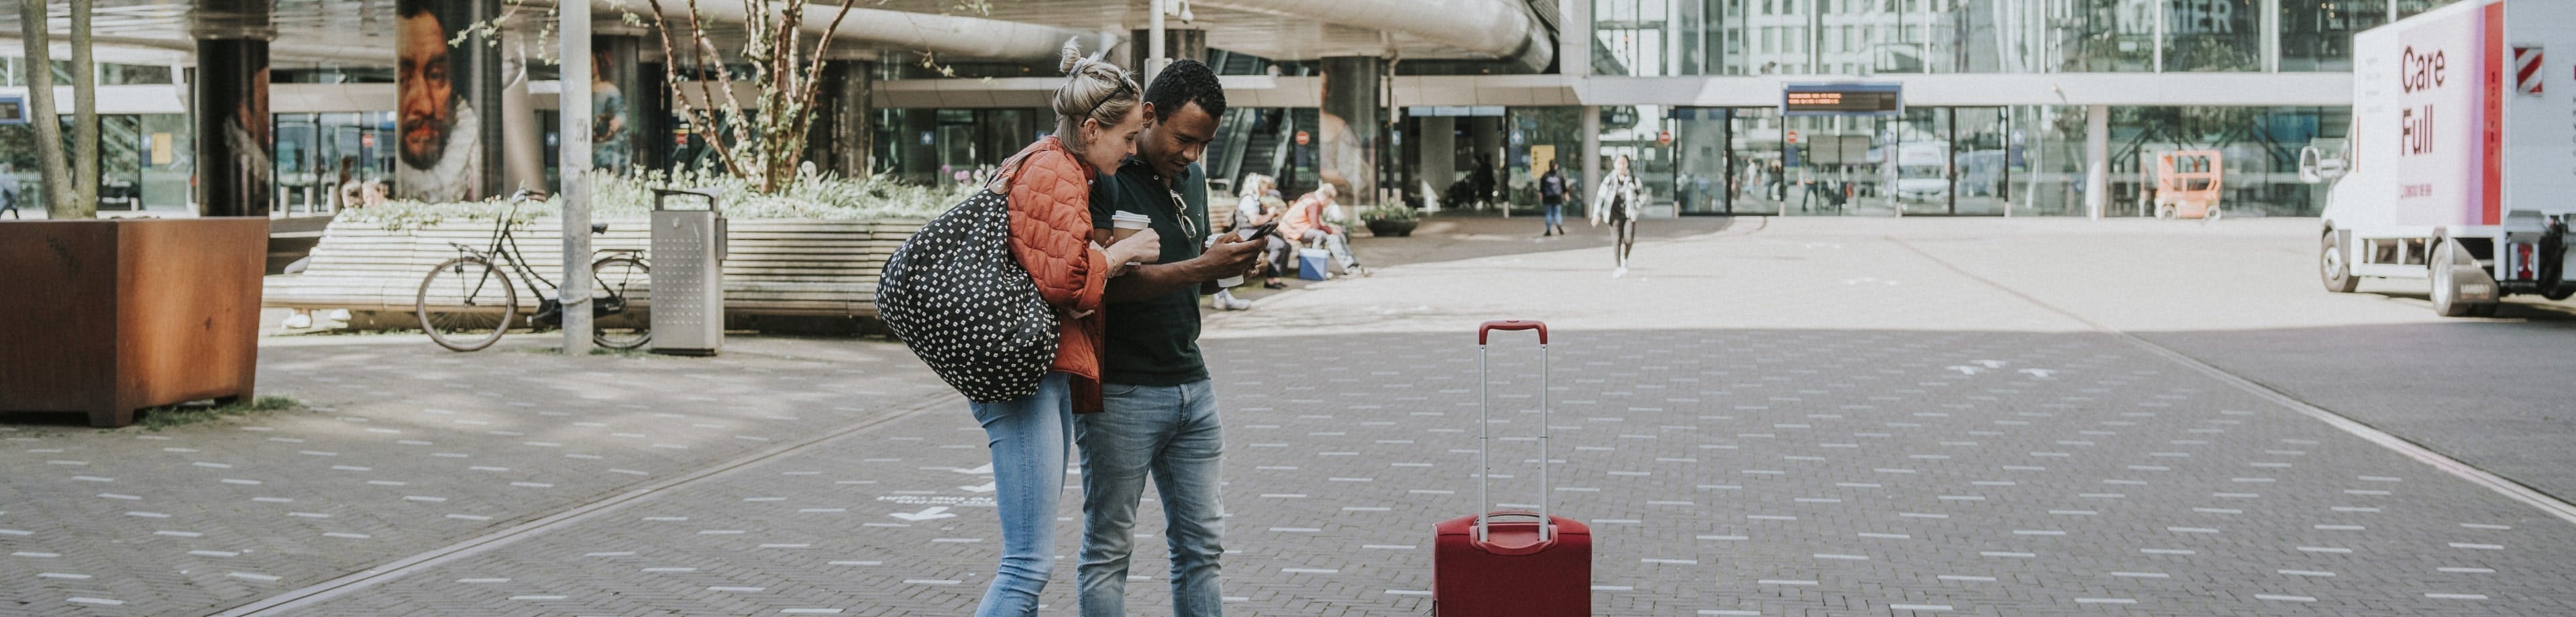 Man en vrouw staan met koffie in de hand en bagage op een stationsplein en kijken op de telefoon die de man vasthoudt